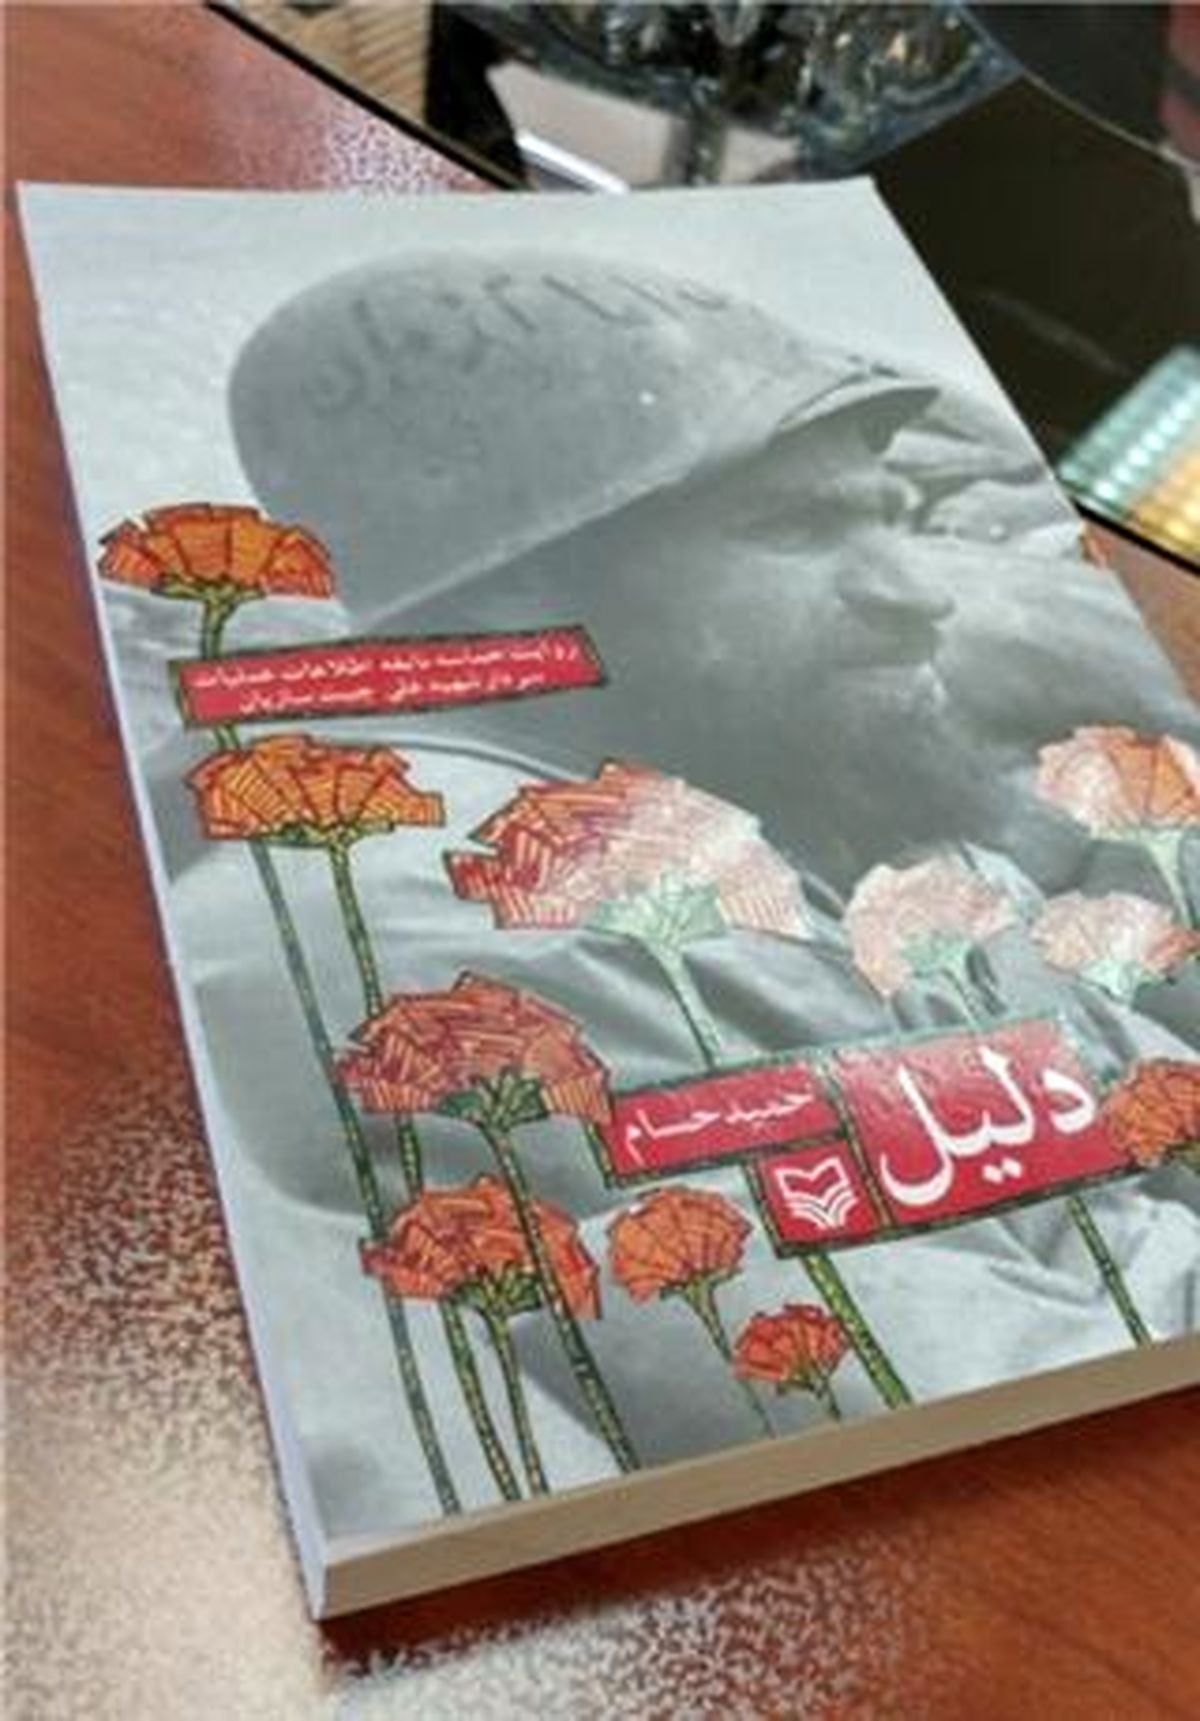 انتشار خاطرات شهیدی که رهبر انقلاب چندین بار از او یاد کردند/ "دلیل" آمد